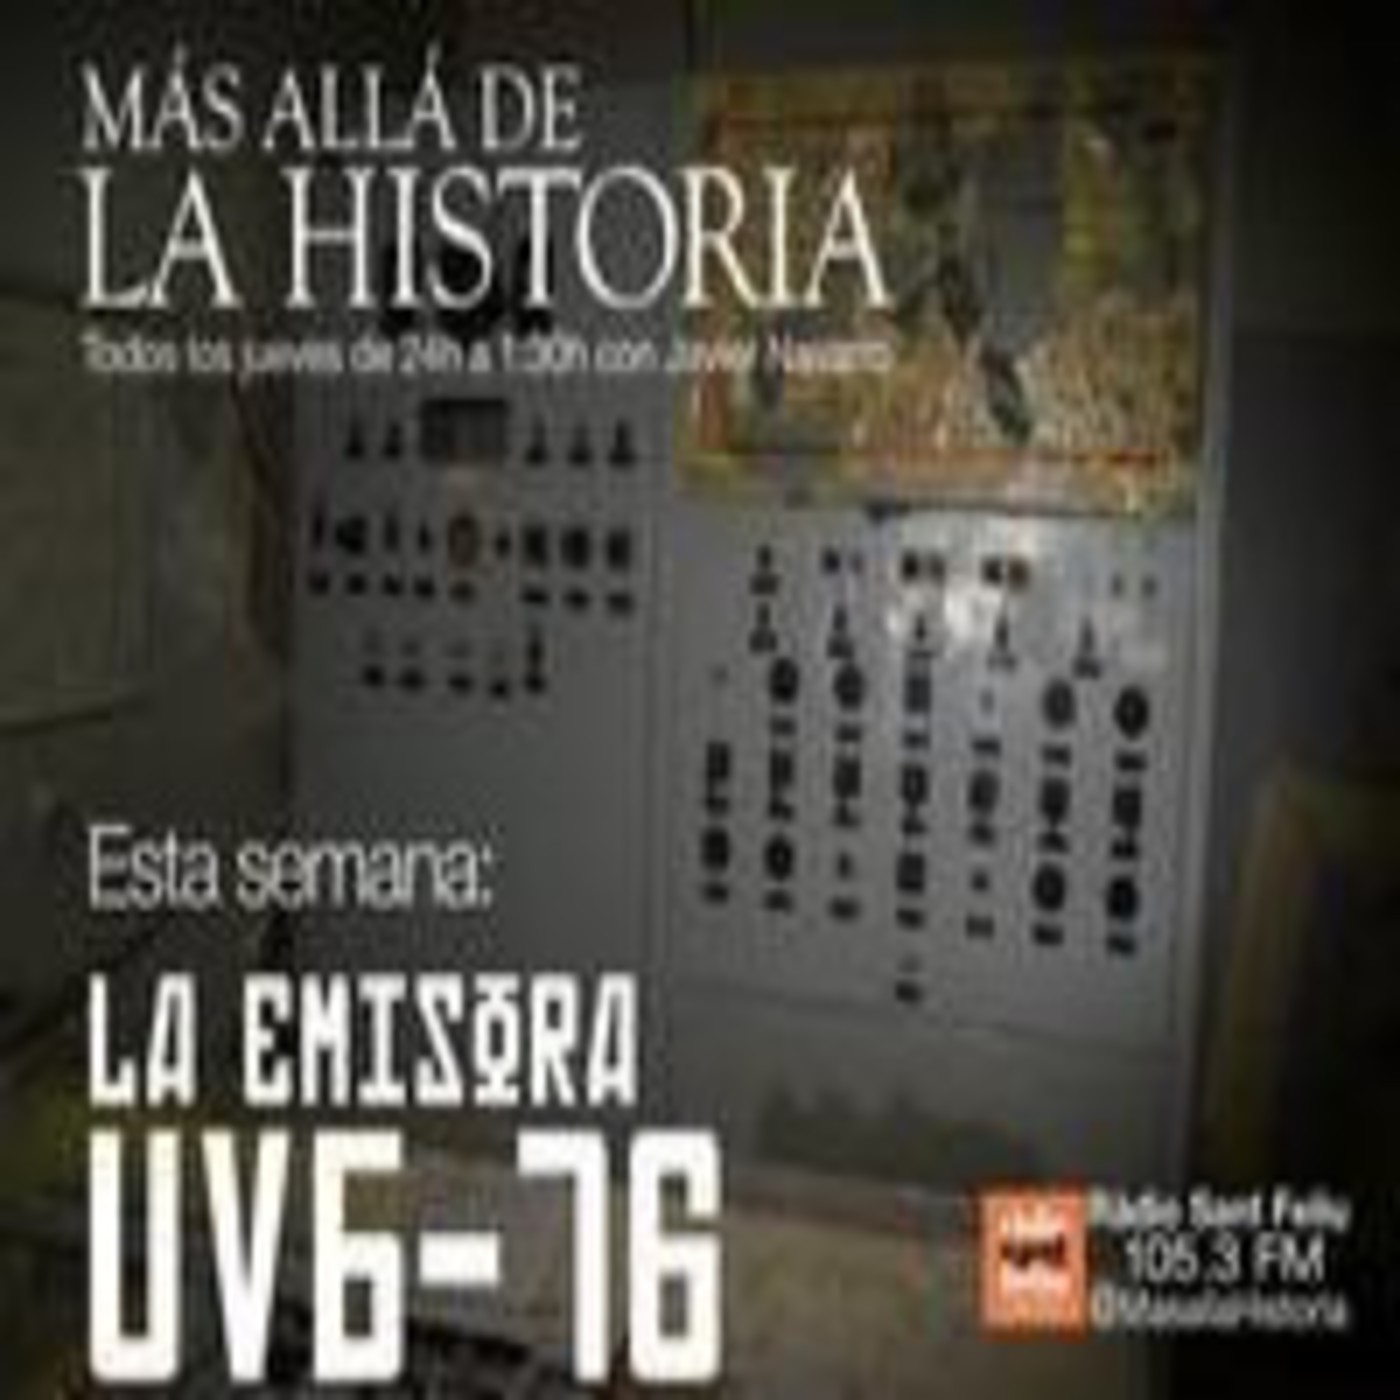 La emisora UVB-76 | Más allá de la Historia